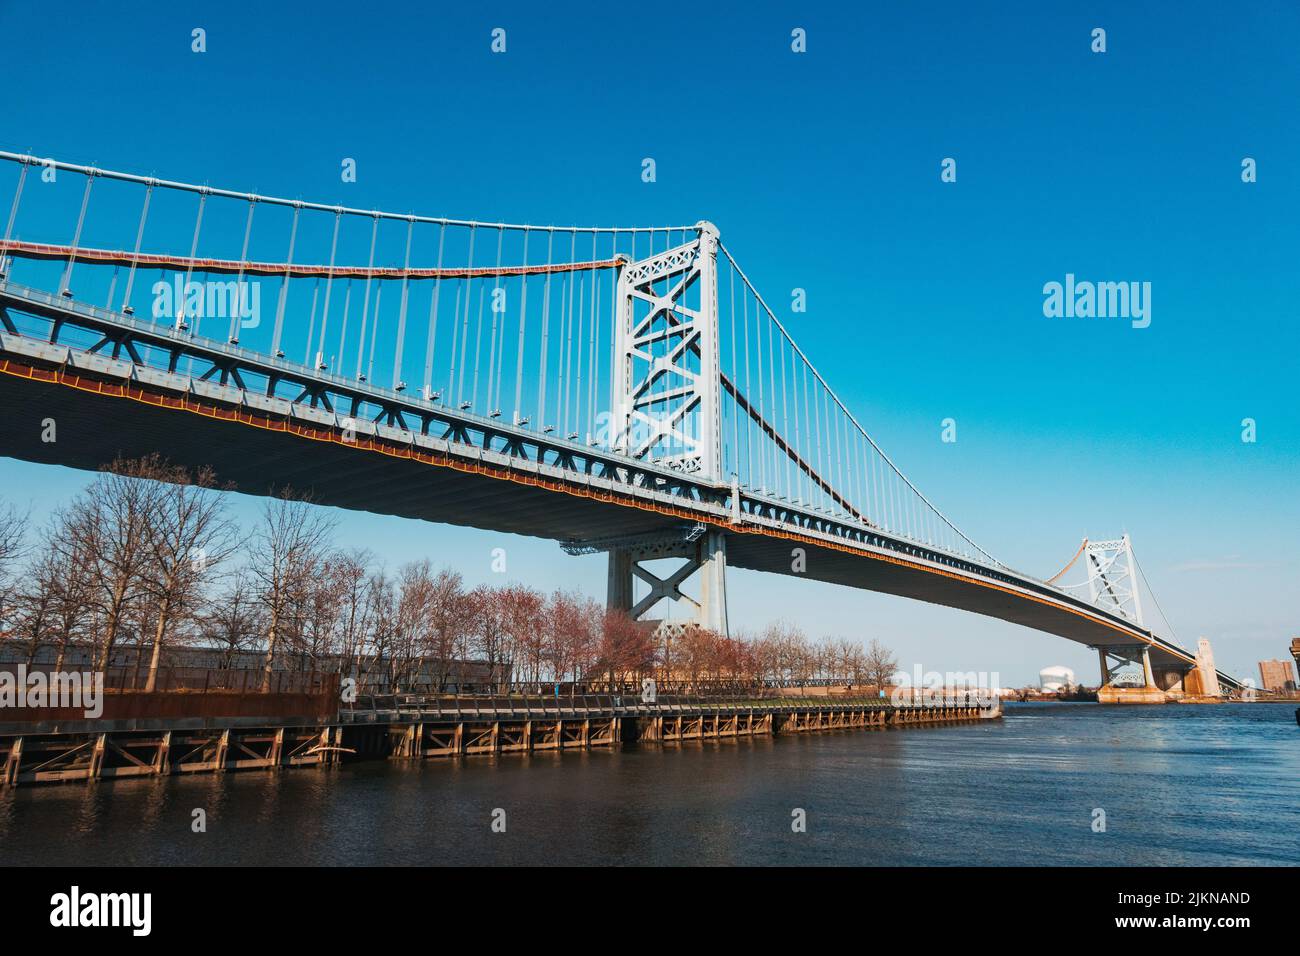 The Benjamin Franklin Bridge over the Delaware River seen from the Philadelphia side Stock Photo